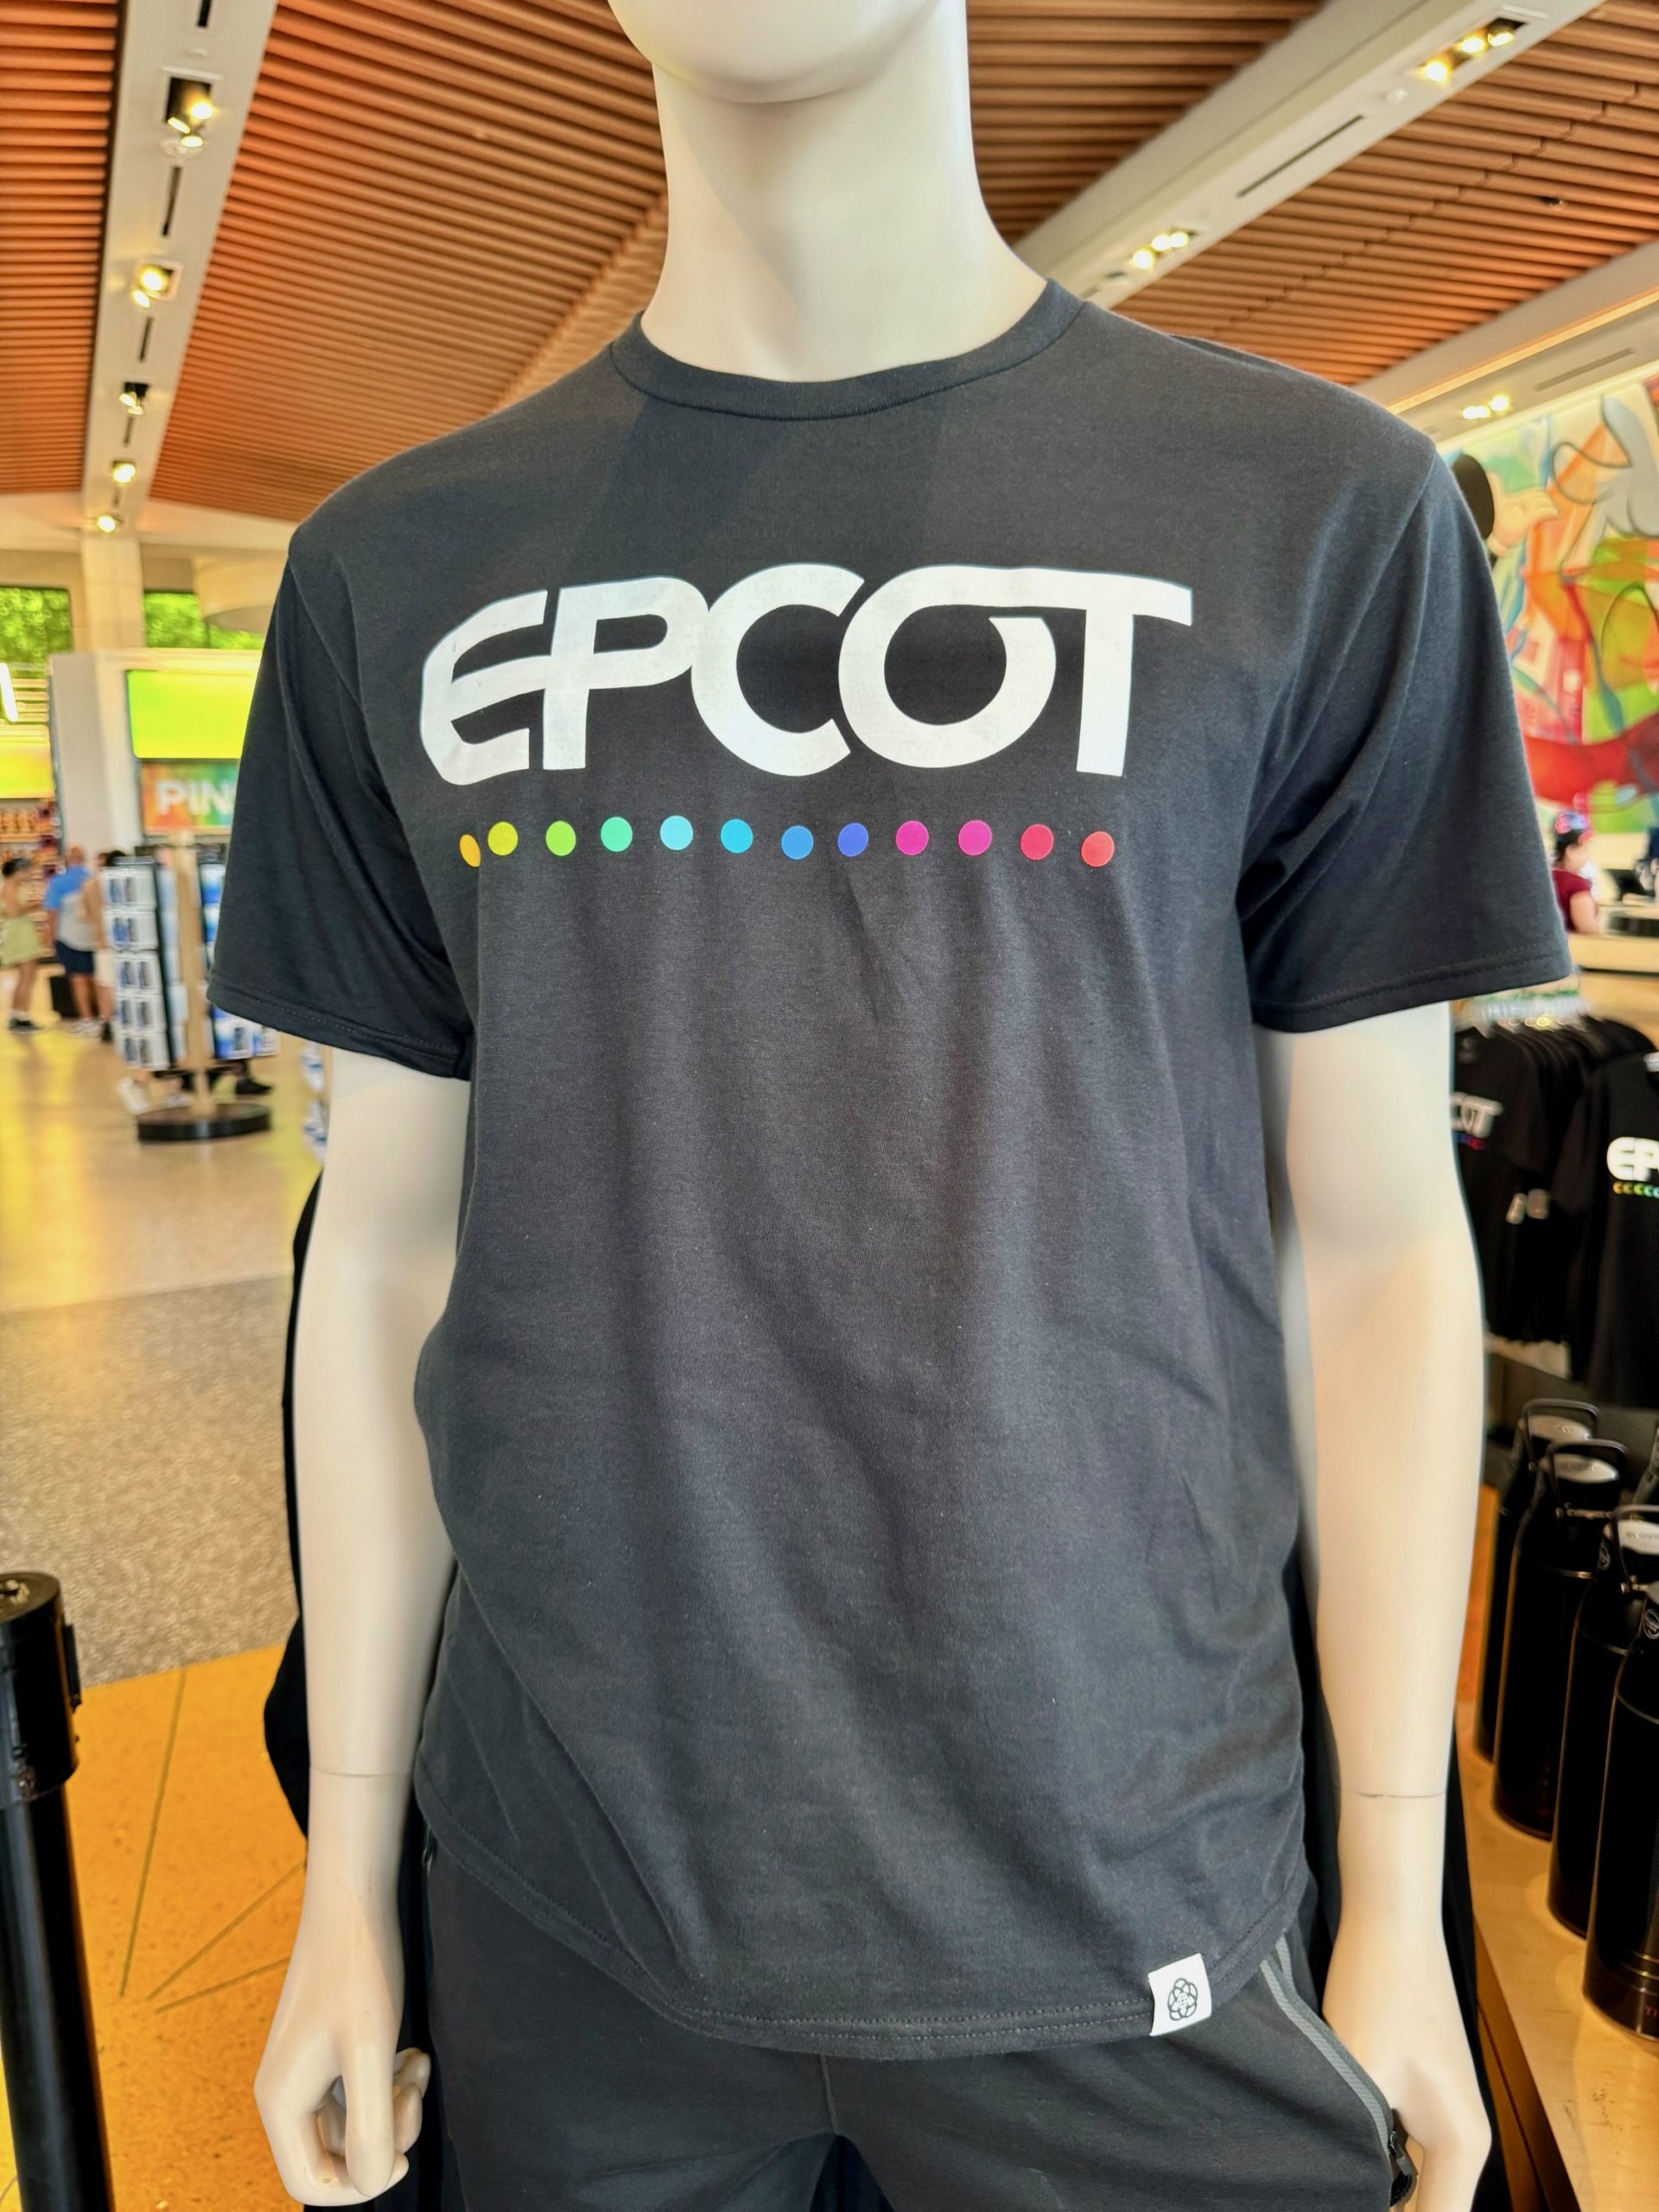 New EPCOT Merchandise